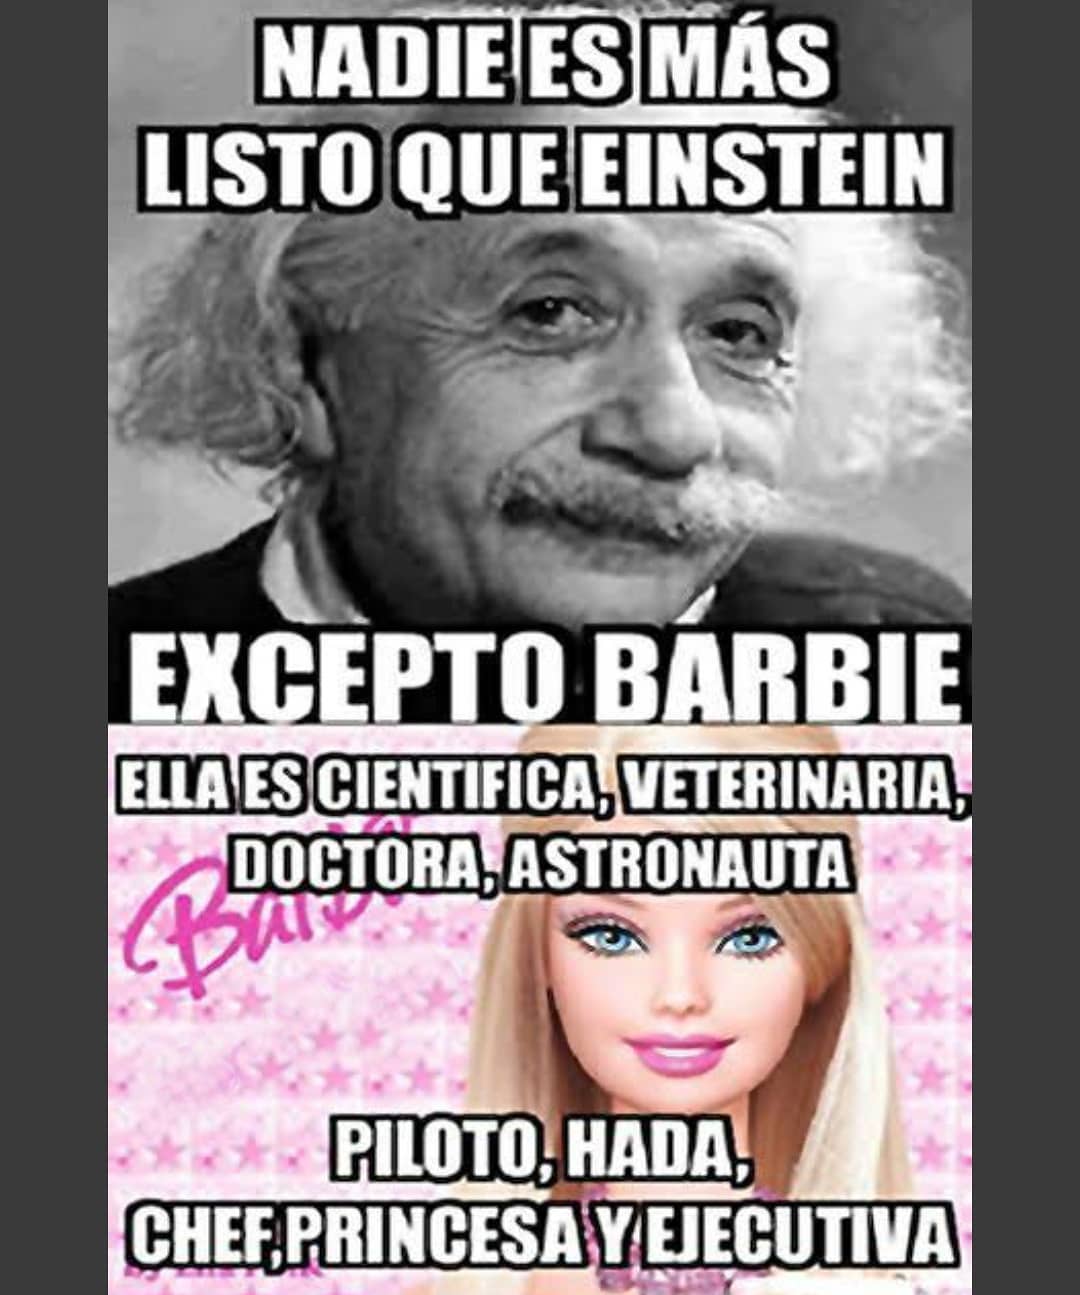 Nadie es más listo que Einstein excepto Barbie, ella es cientifica, veterinaria, doctora, astronauta piloto, hada, chef, princesa y ejecutiva.